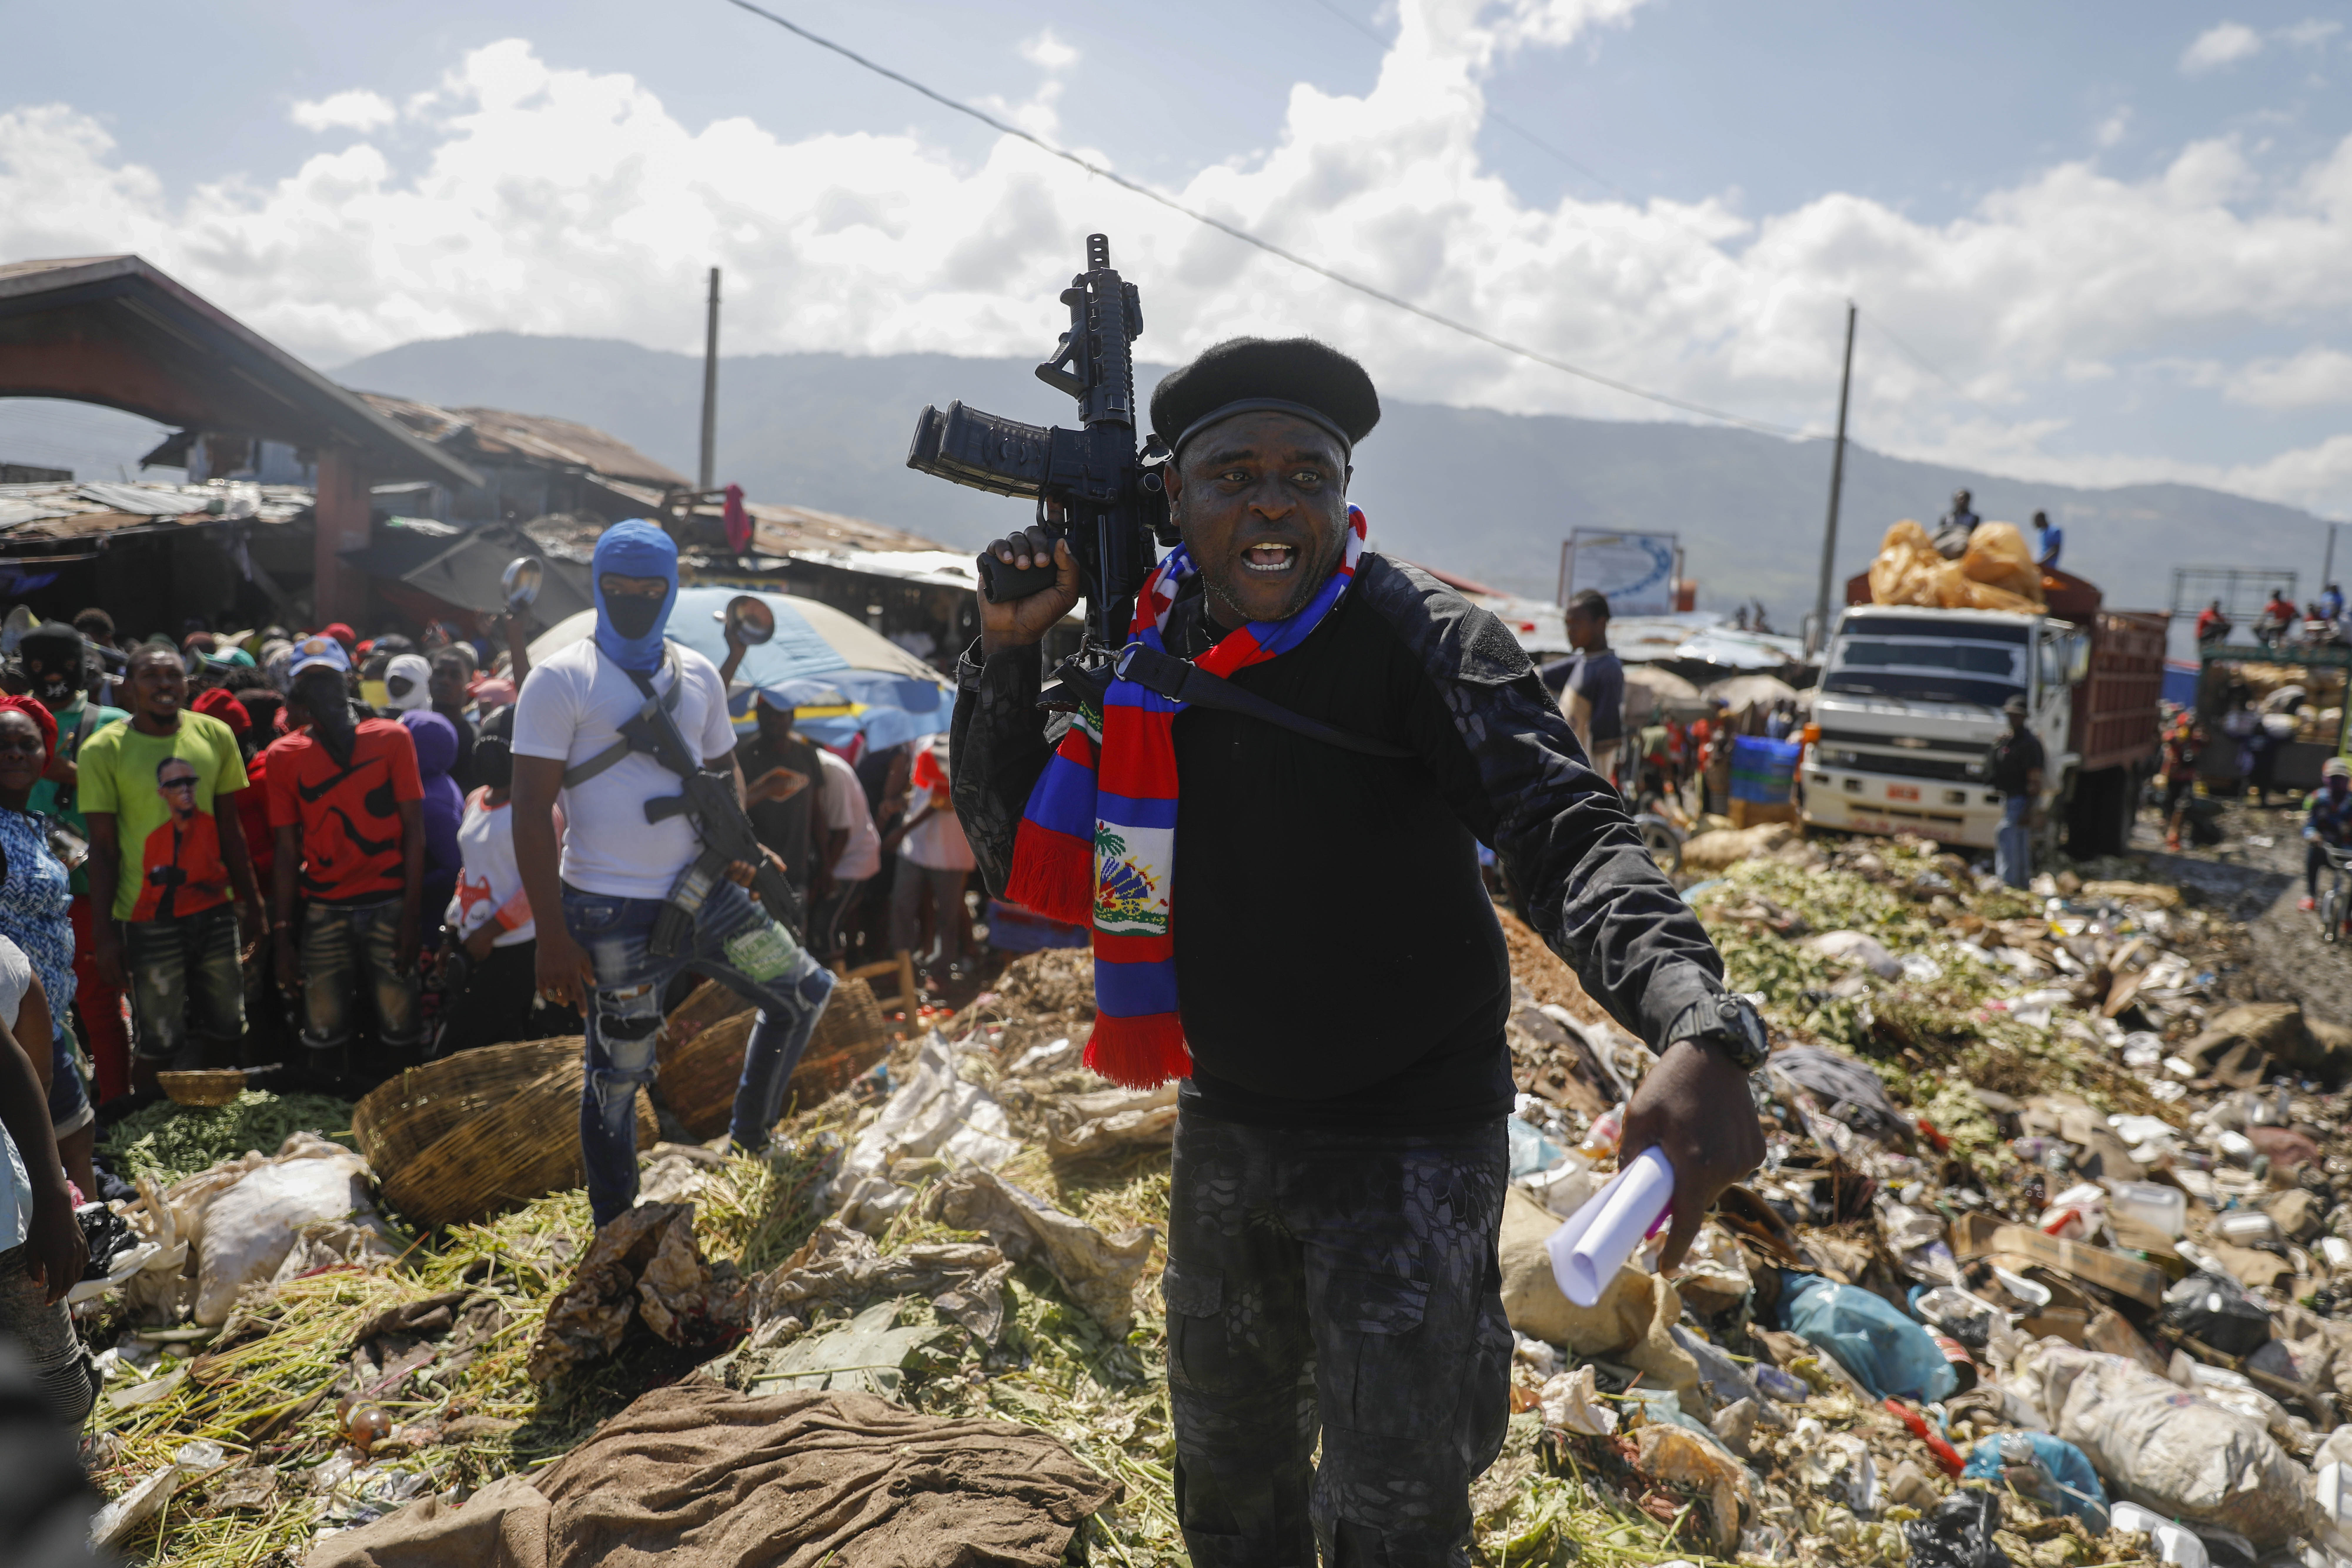 La nueva ola de violencia que golpea a Haití, en imágenes | Fotos |  Internacional | EL PAÍS